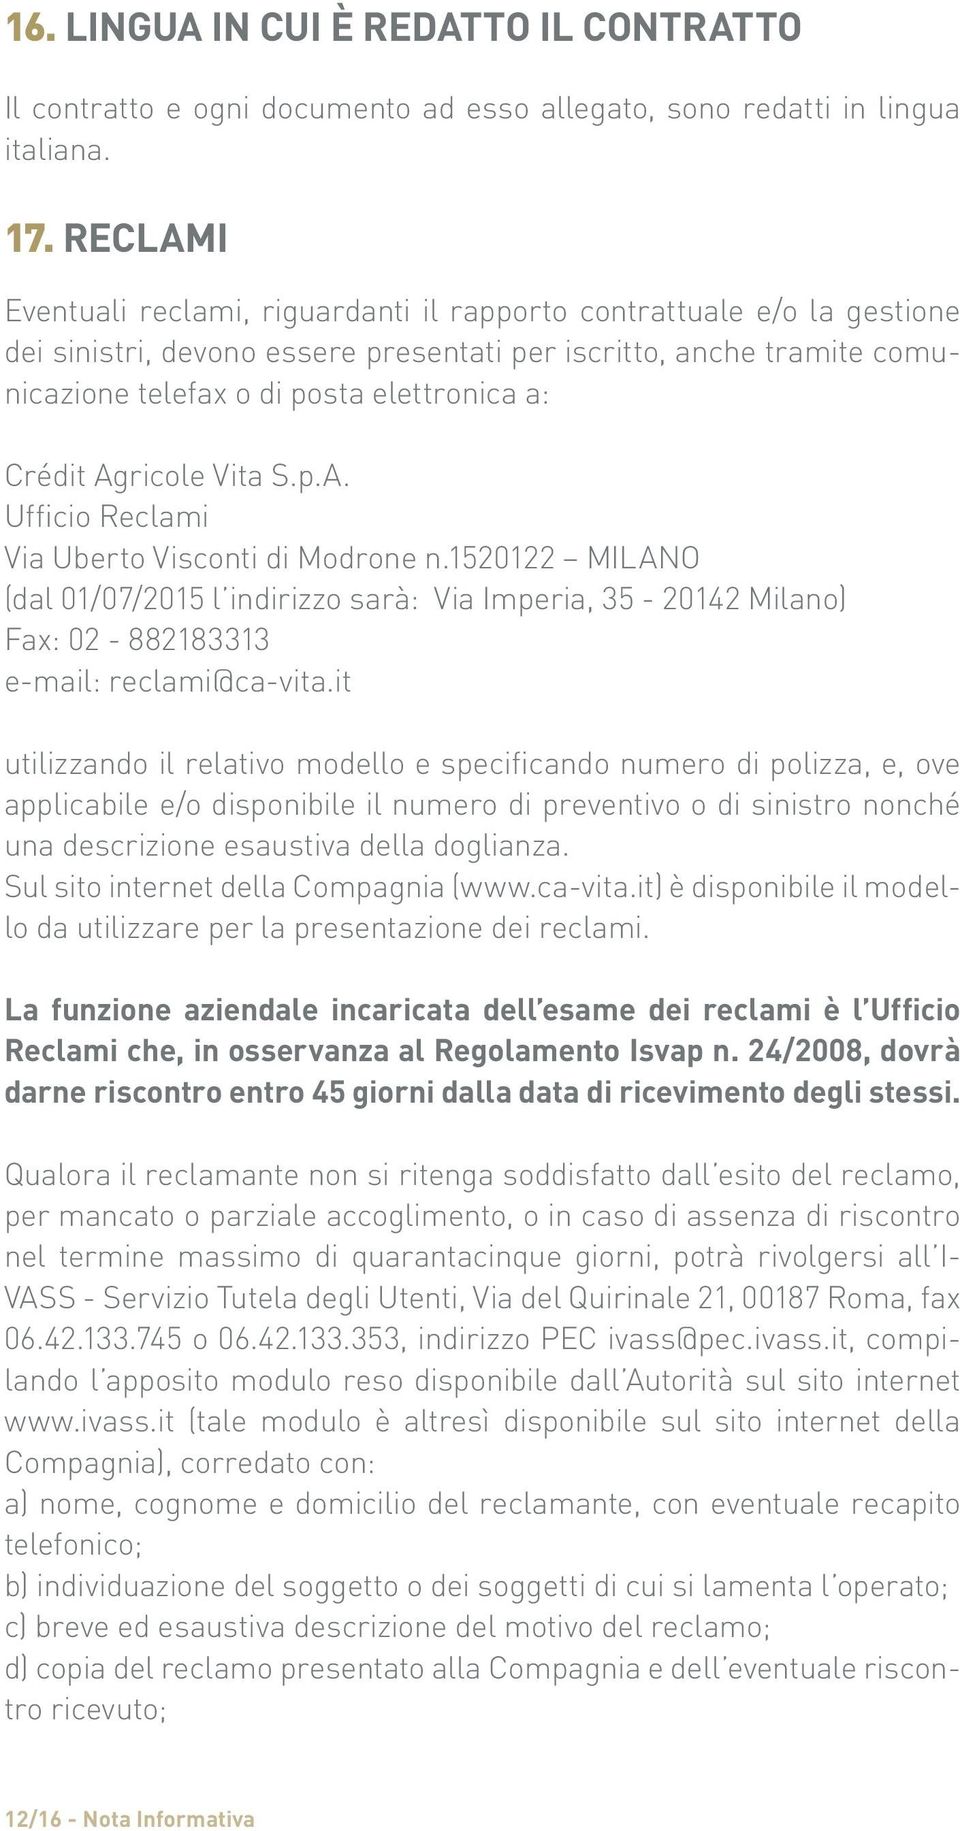 Crédit Agricole Vita S.p.A. Ufficio Reclami Via Uberto Visconti di Modrone n.1520122 MILANO (dal 01/07/2015 l indirizzo sarà: Via Imperia, 35-20142 Milano) Fax: 02-882183313 e-mail: reclami@ca-vita.